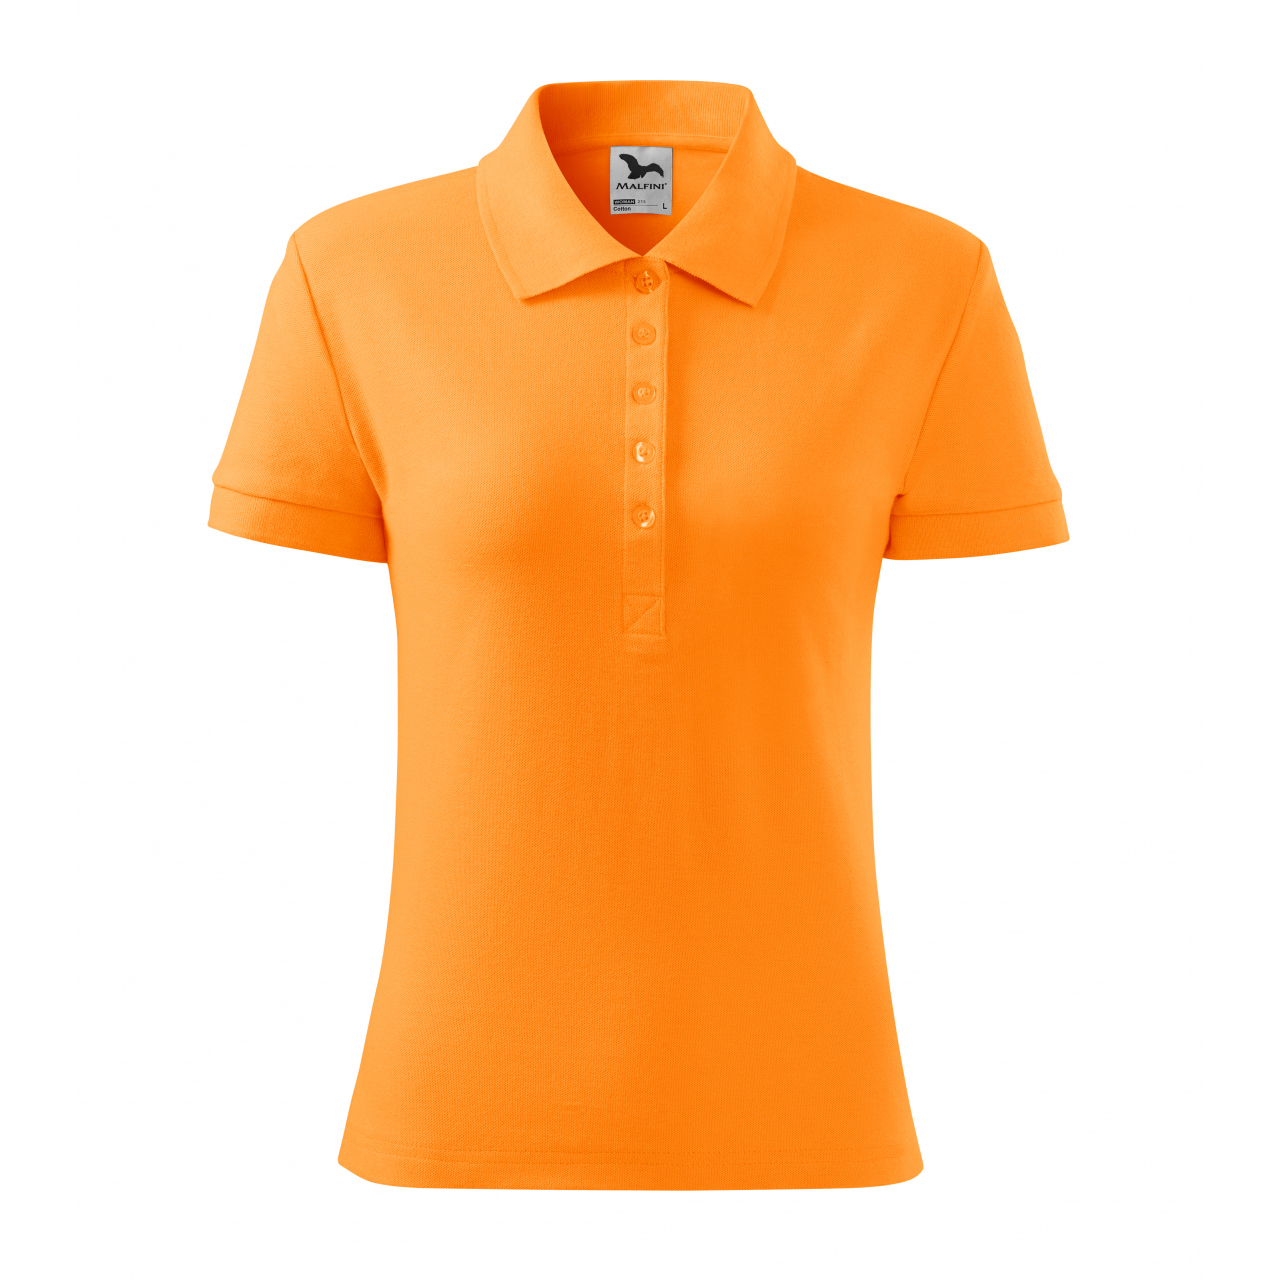 Polokošile dámská Malfini Cotton - světle oranžová, XL